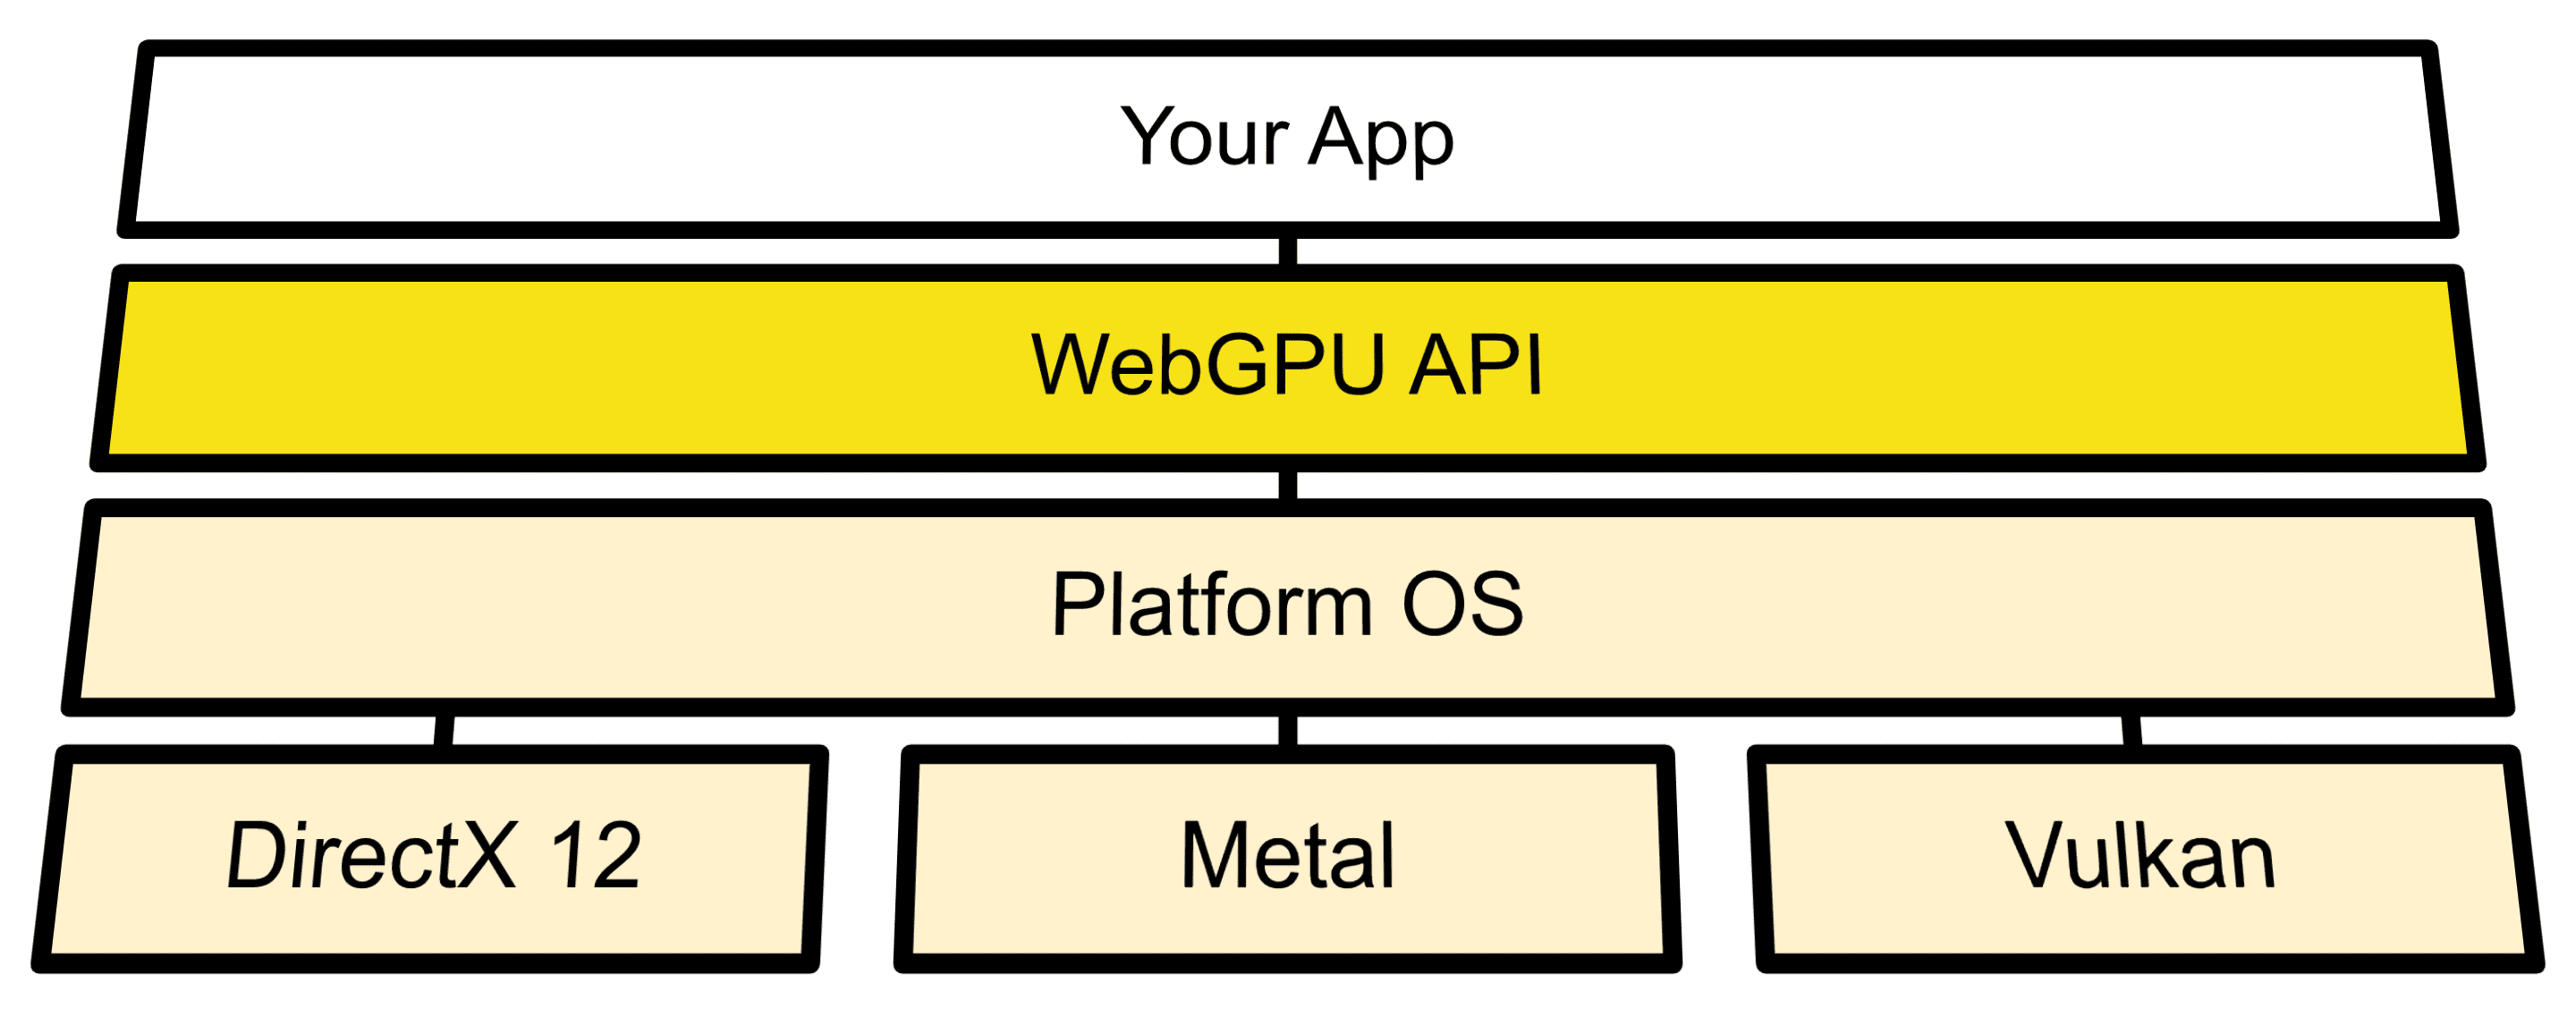 Схема архитектуры, показывающая соединение WebGPU между API-интерфейсами ОС и Direct3D 12, Metal и Vulkan.